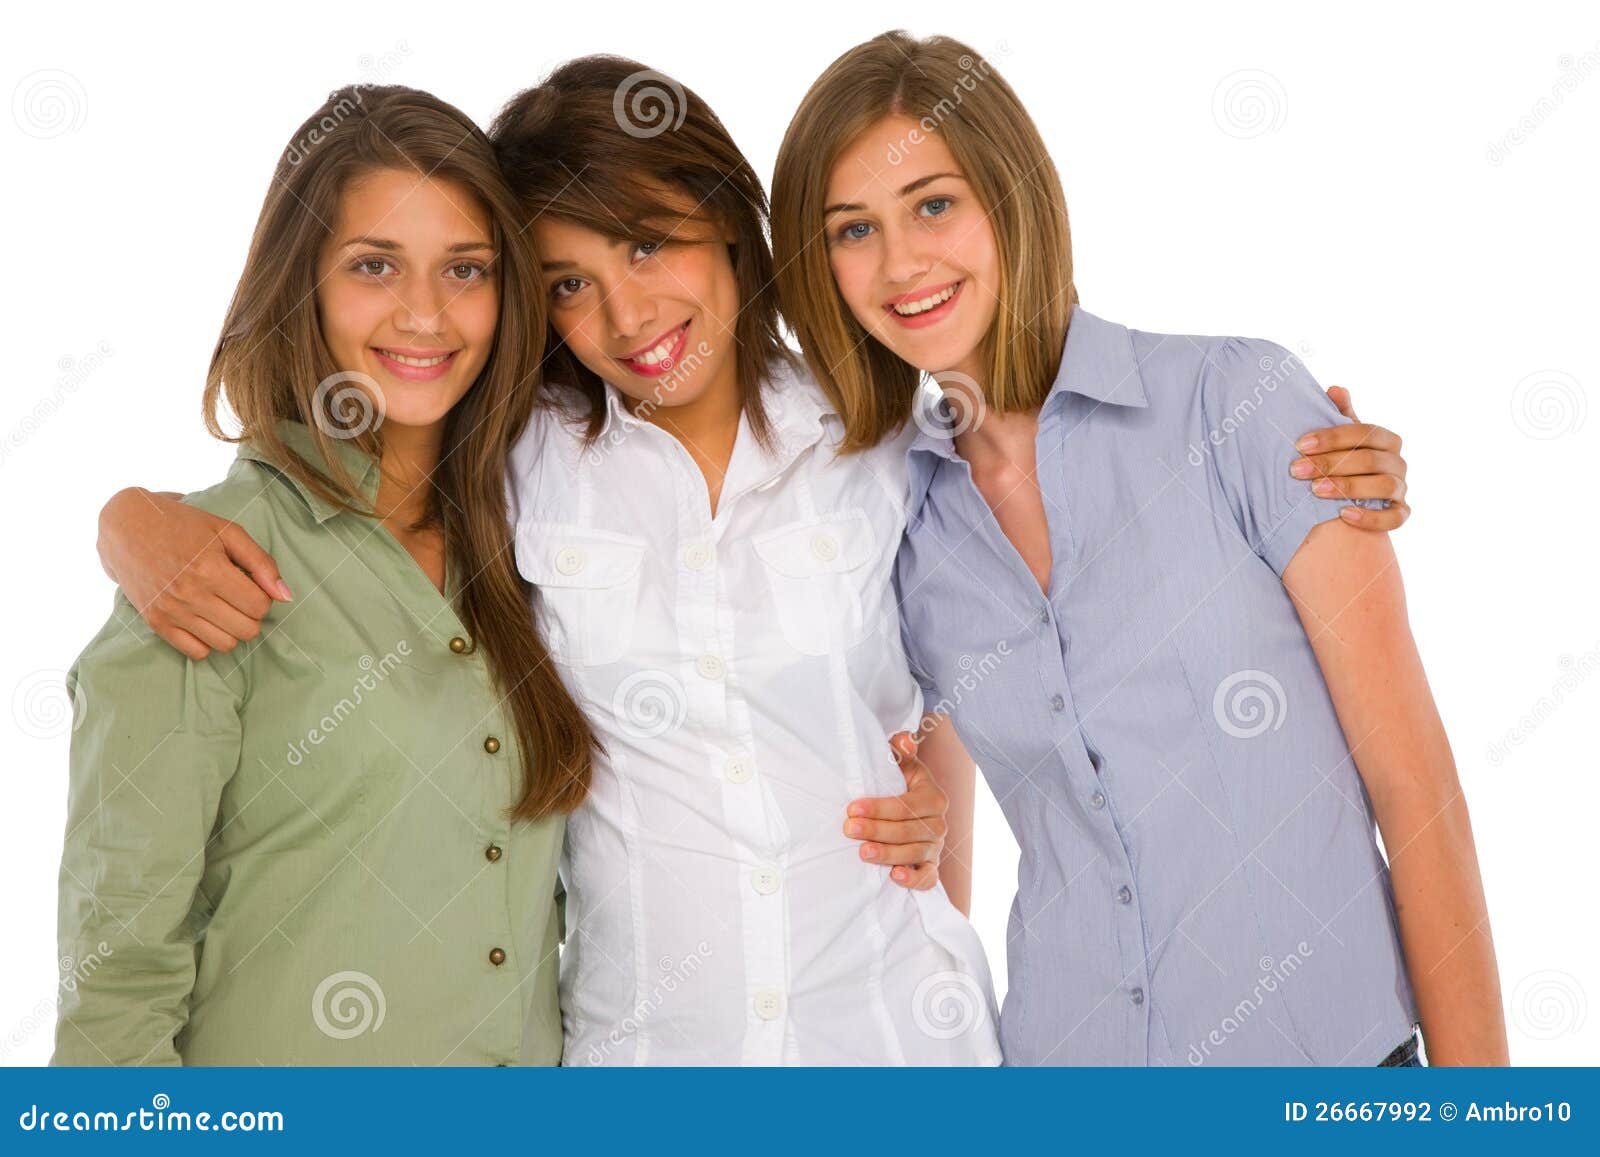 Рядом стоят 3 девушки. Три девушки на белом фоне. Фотографии трёх девушек на фоне белом. 3 Девочки подростка в белом. Картинка три девочки в галстуках.